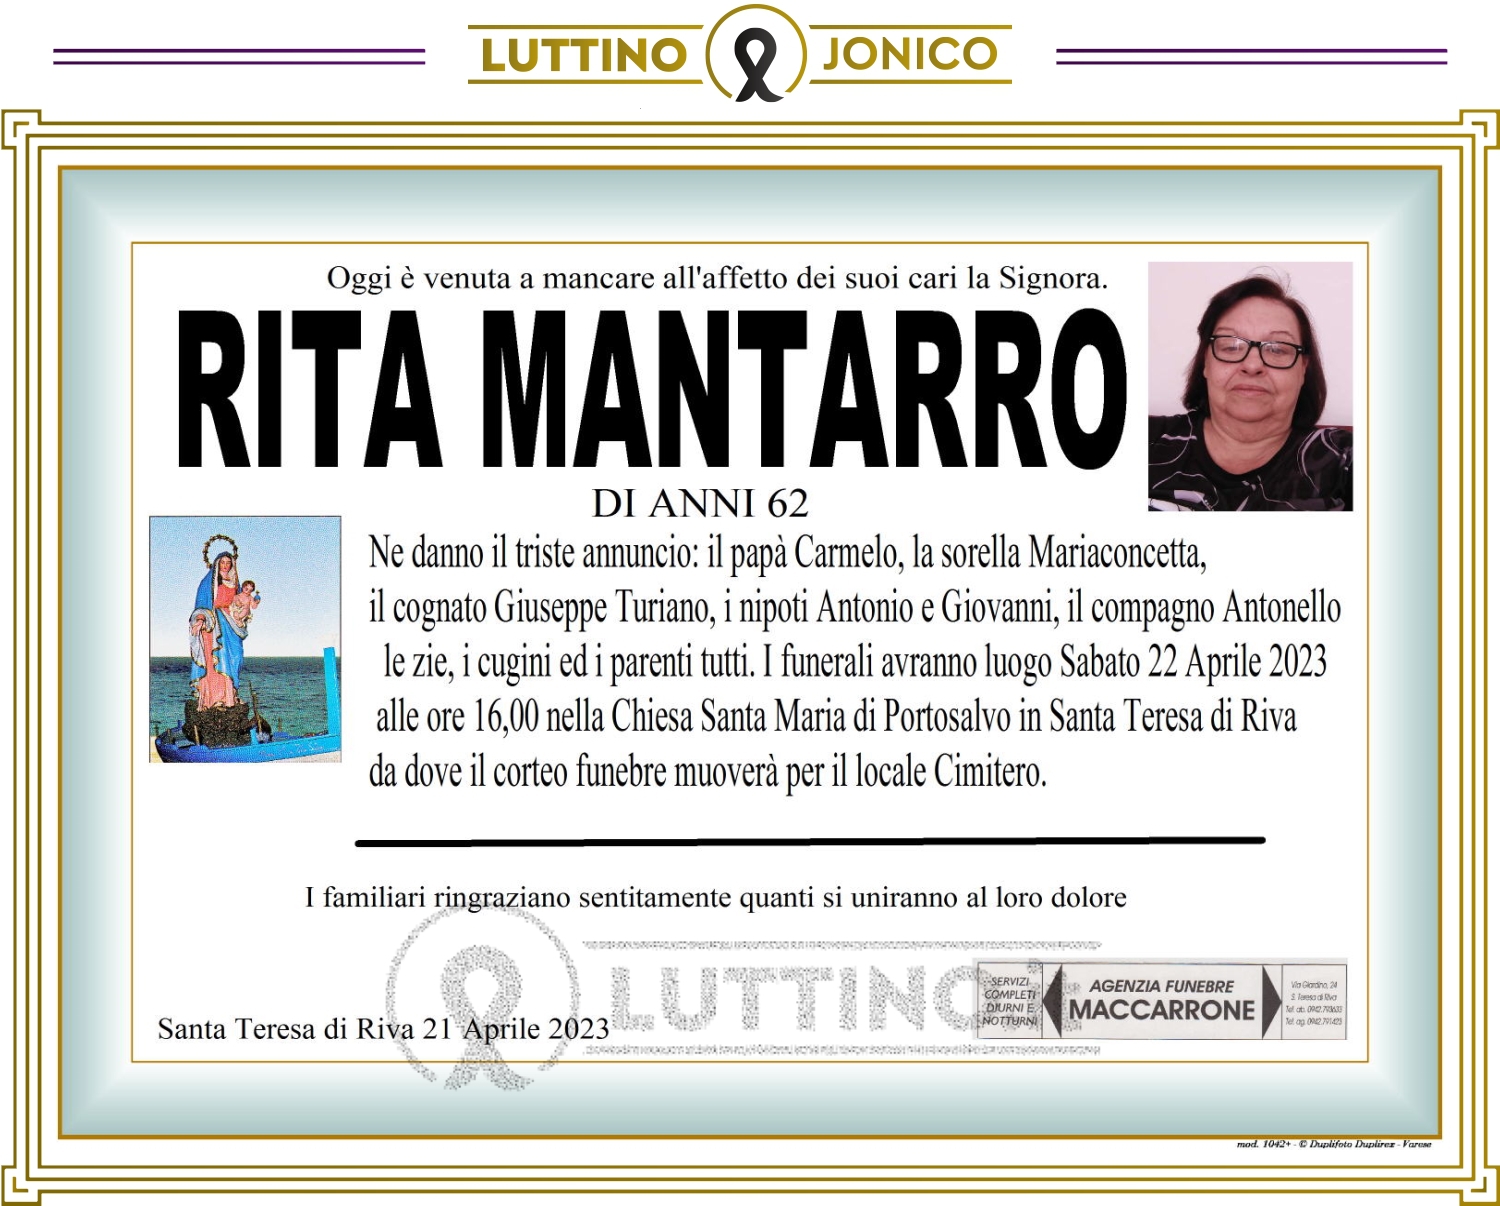 Rita Mantarro